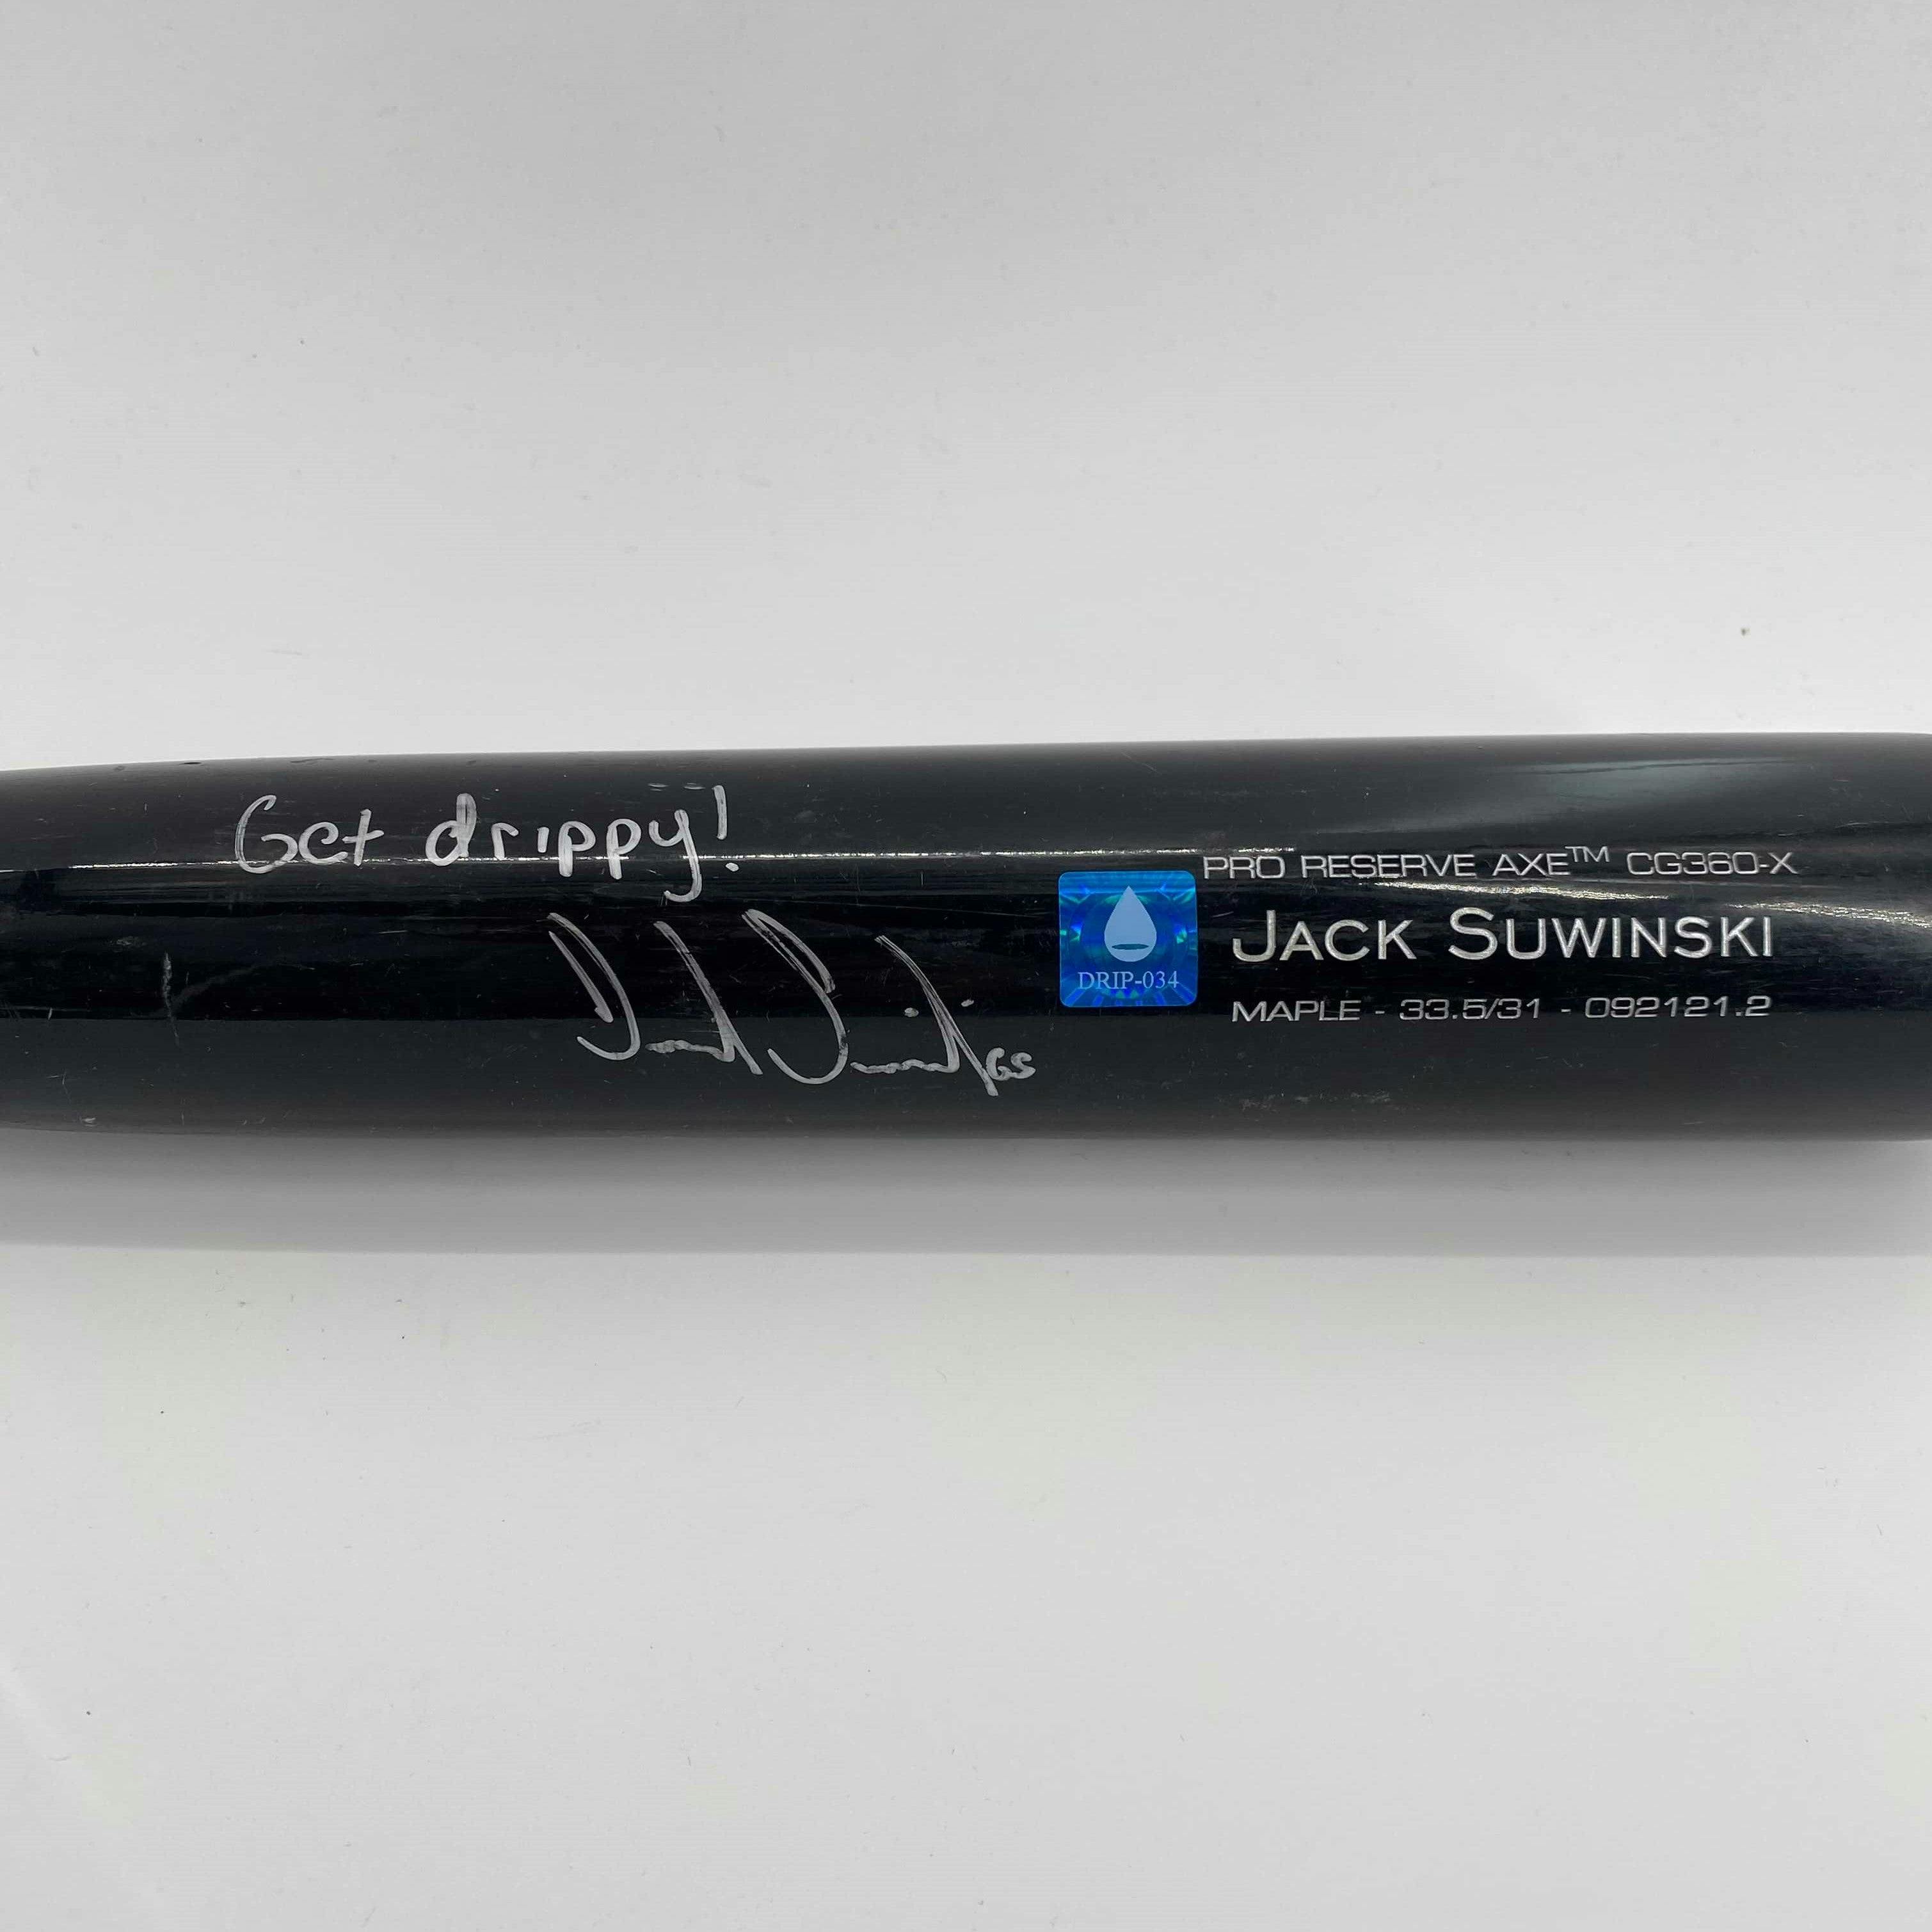 Jack Suwinski Used & Signed Bat